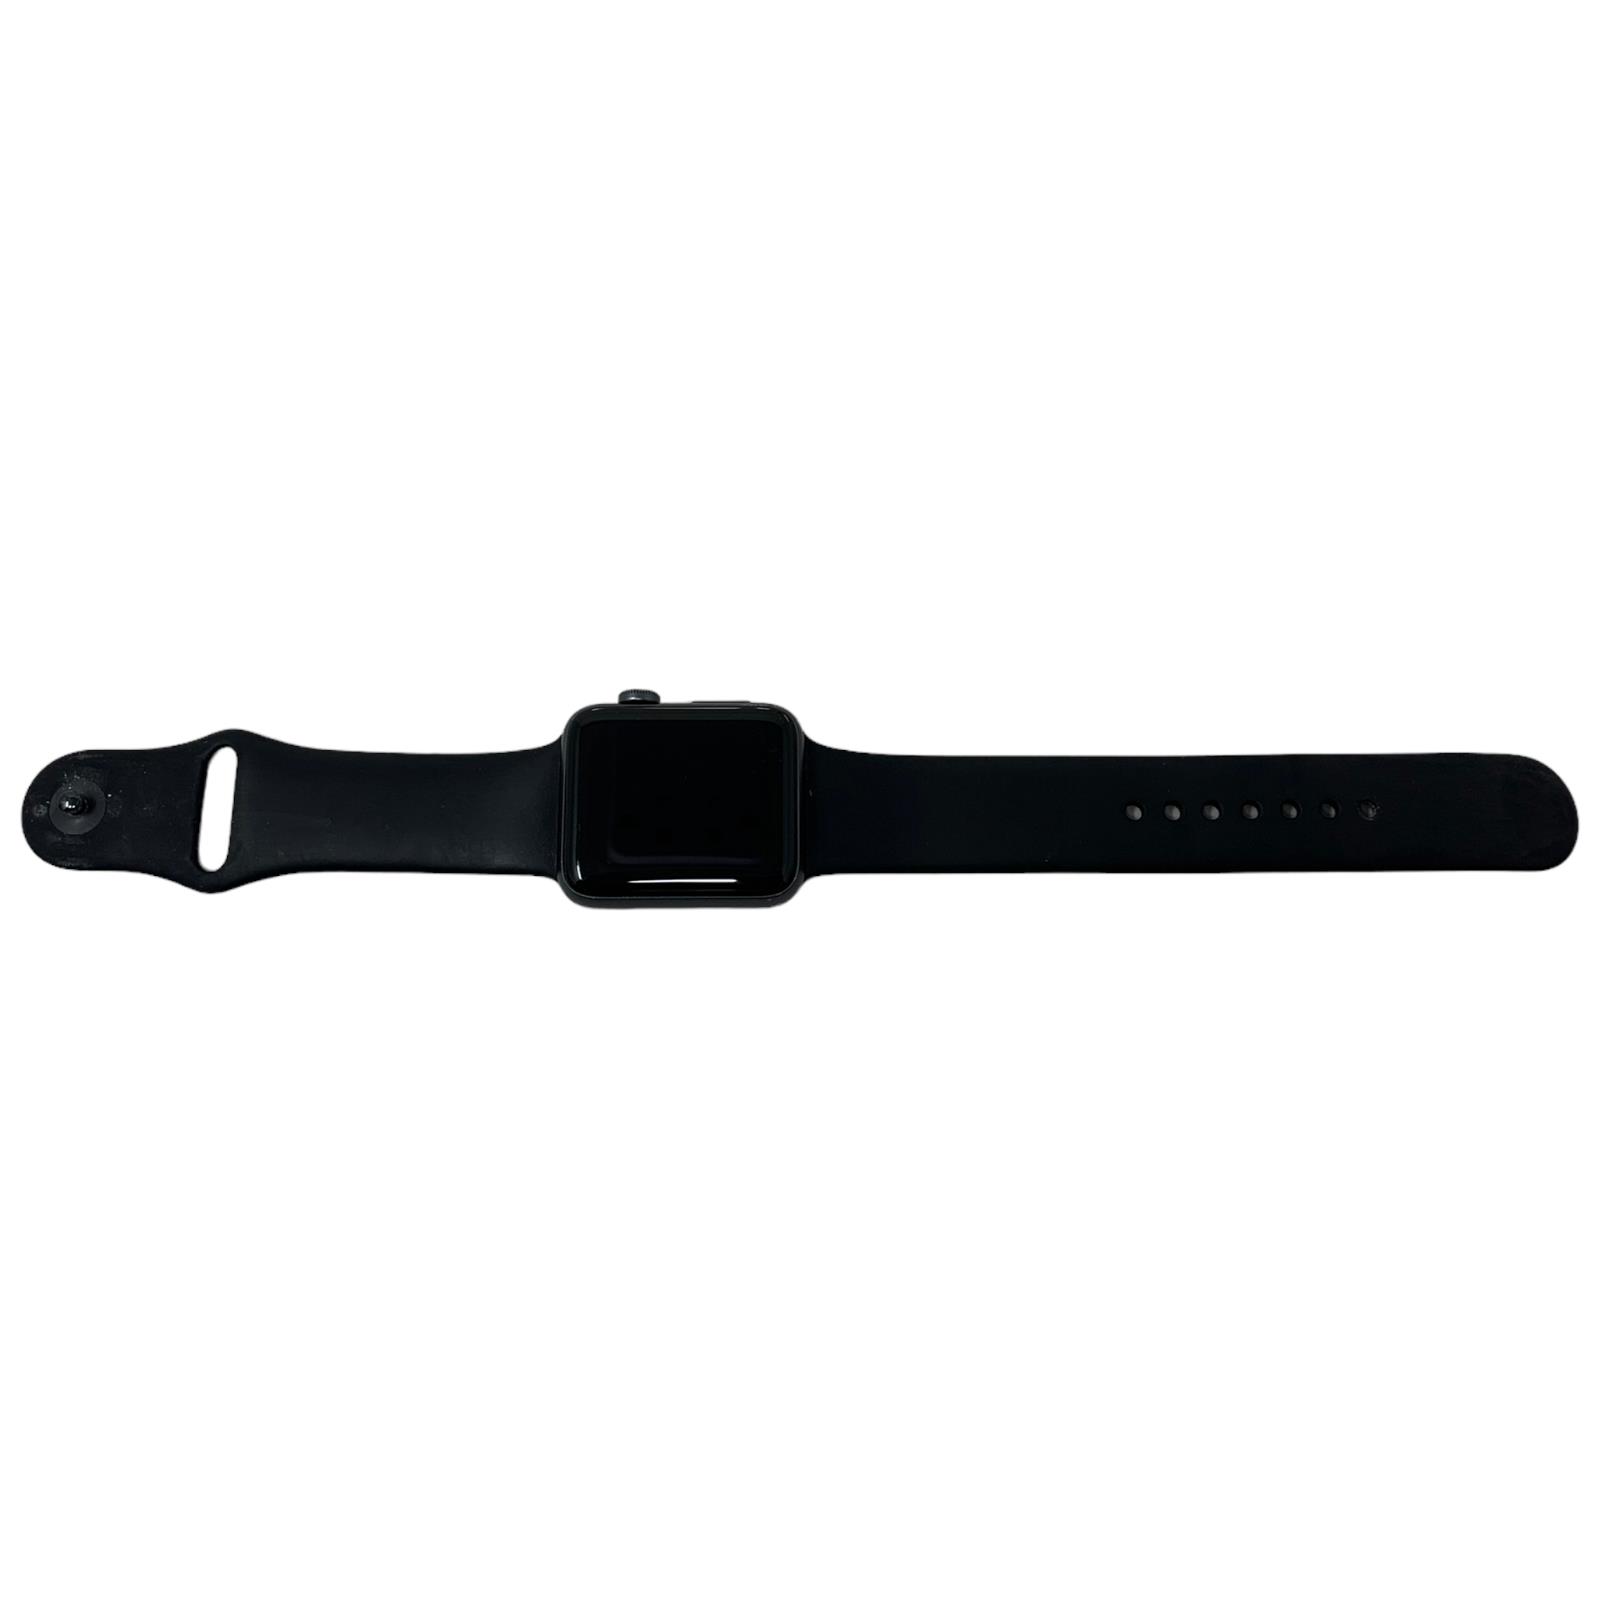 RSD6308 Apple Watch Serie3 42mm GR. A Gar. 12M Fattura